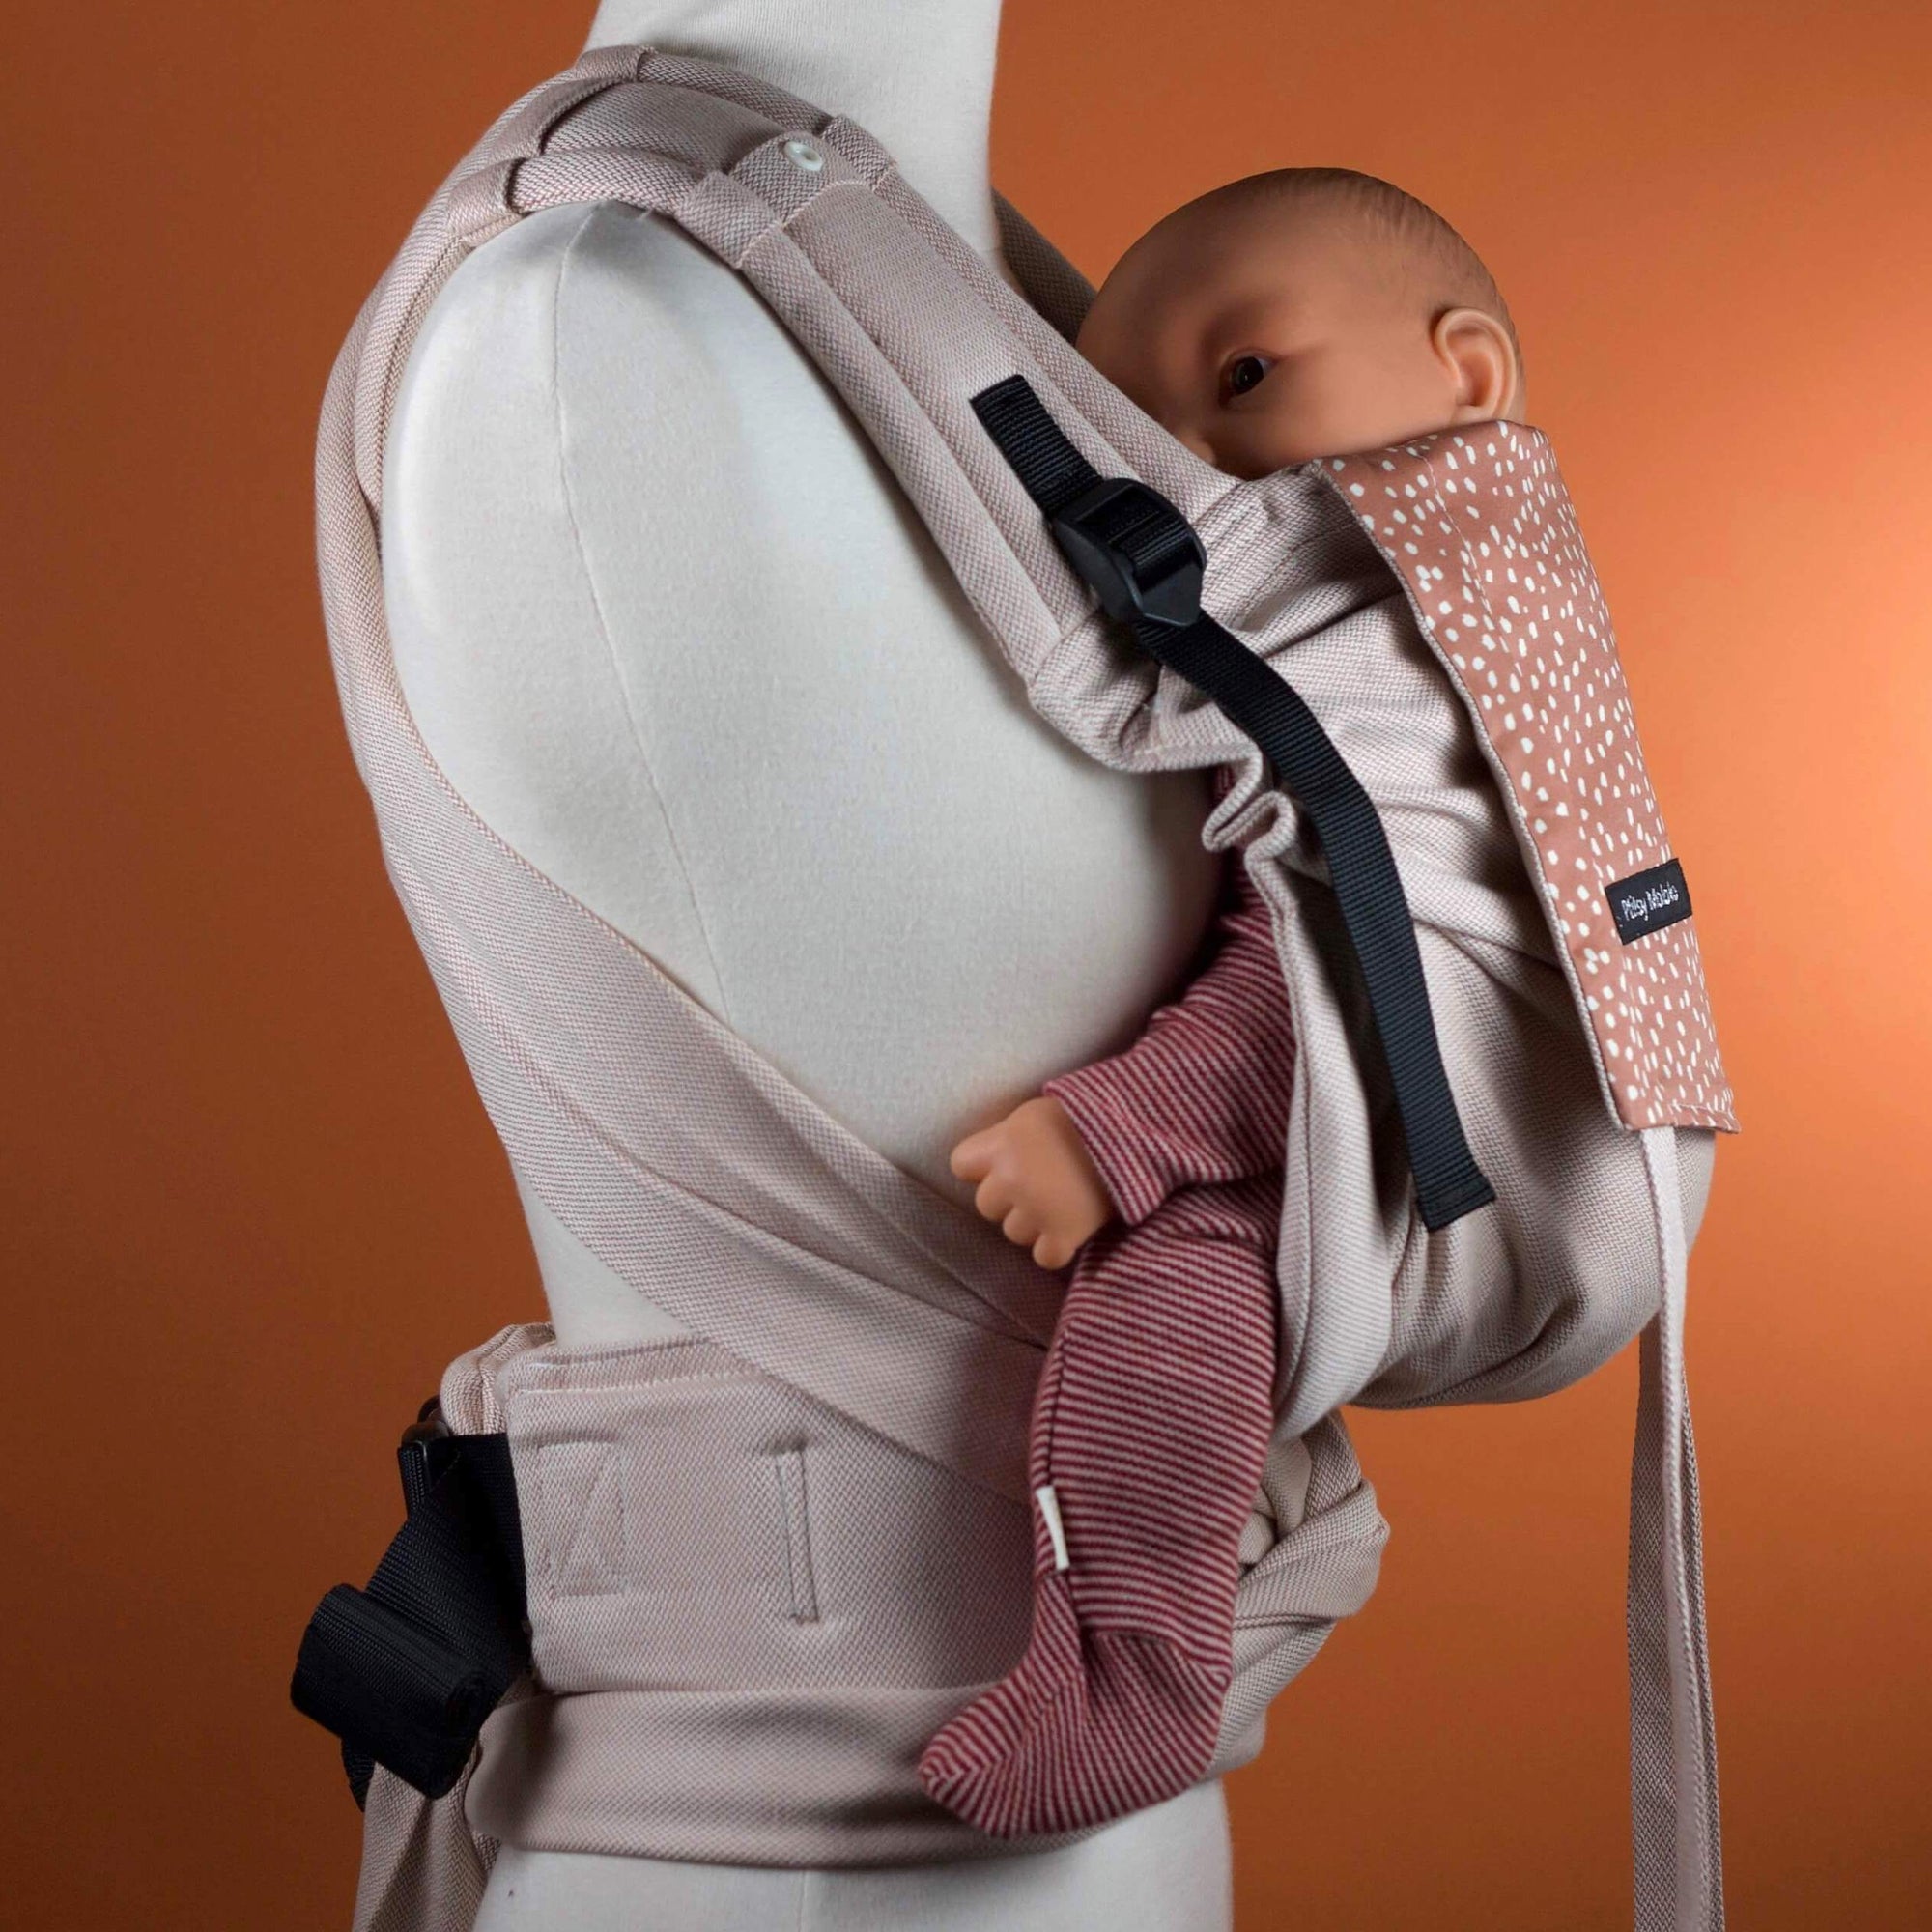 porte-bebe pti-clip physiologique et facile à installer.